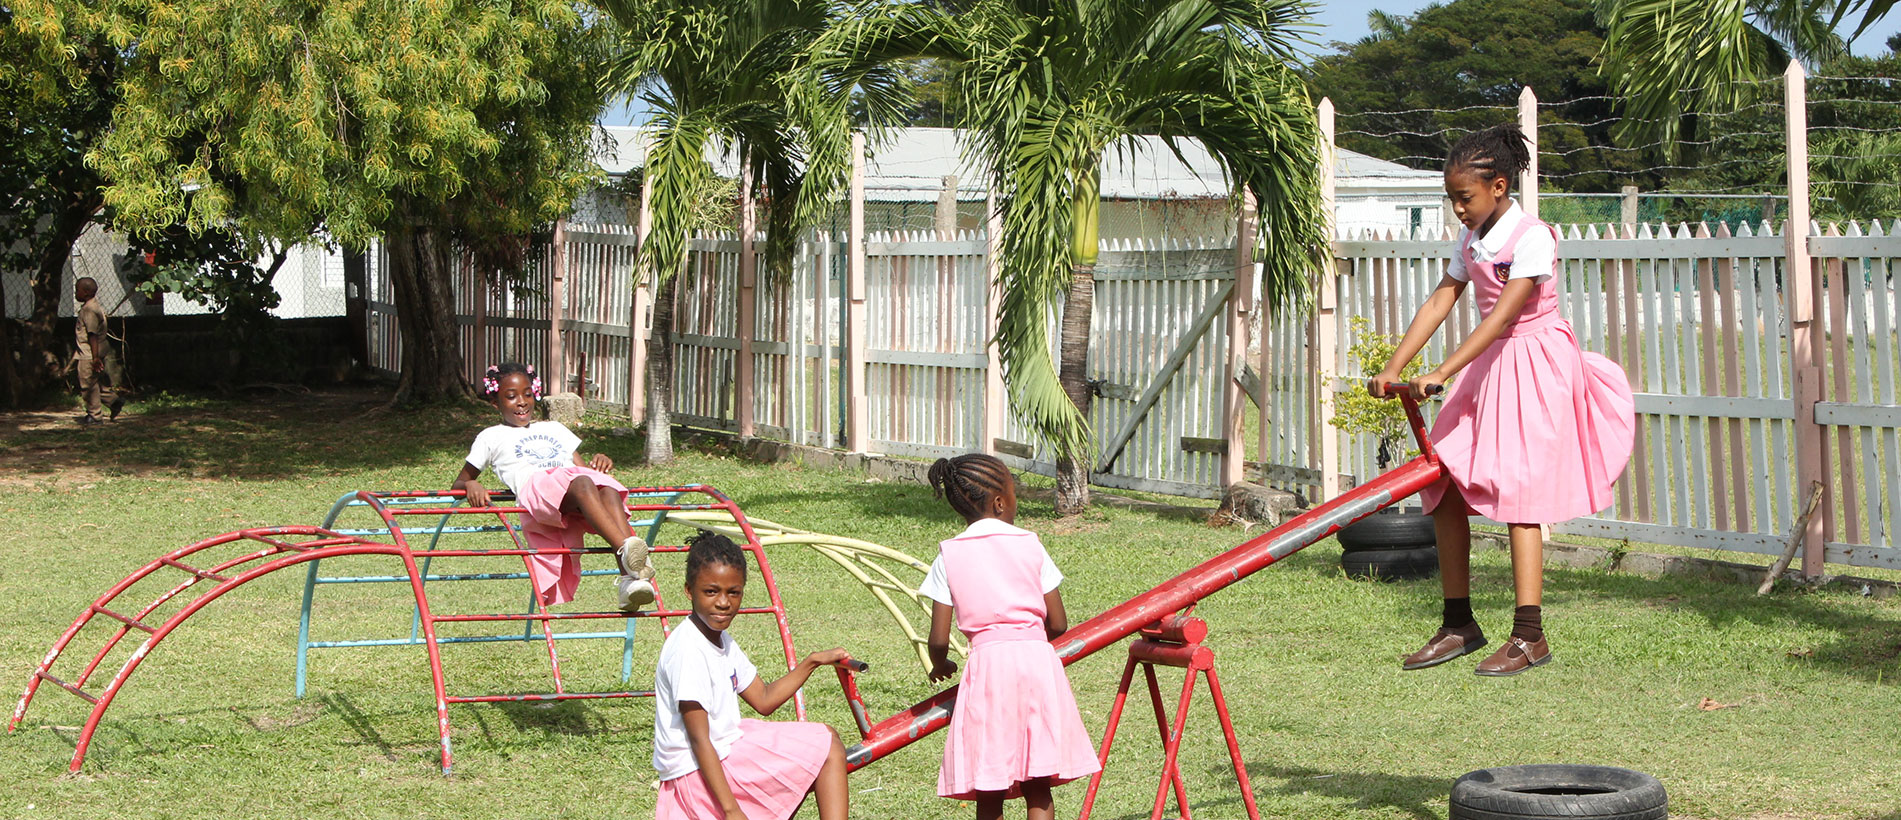 Kindergarten-teaching in Jamaica